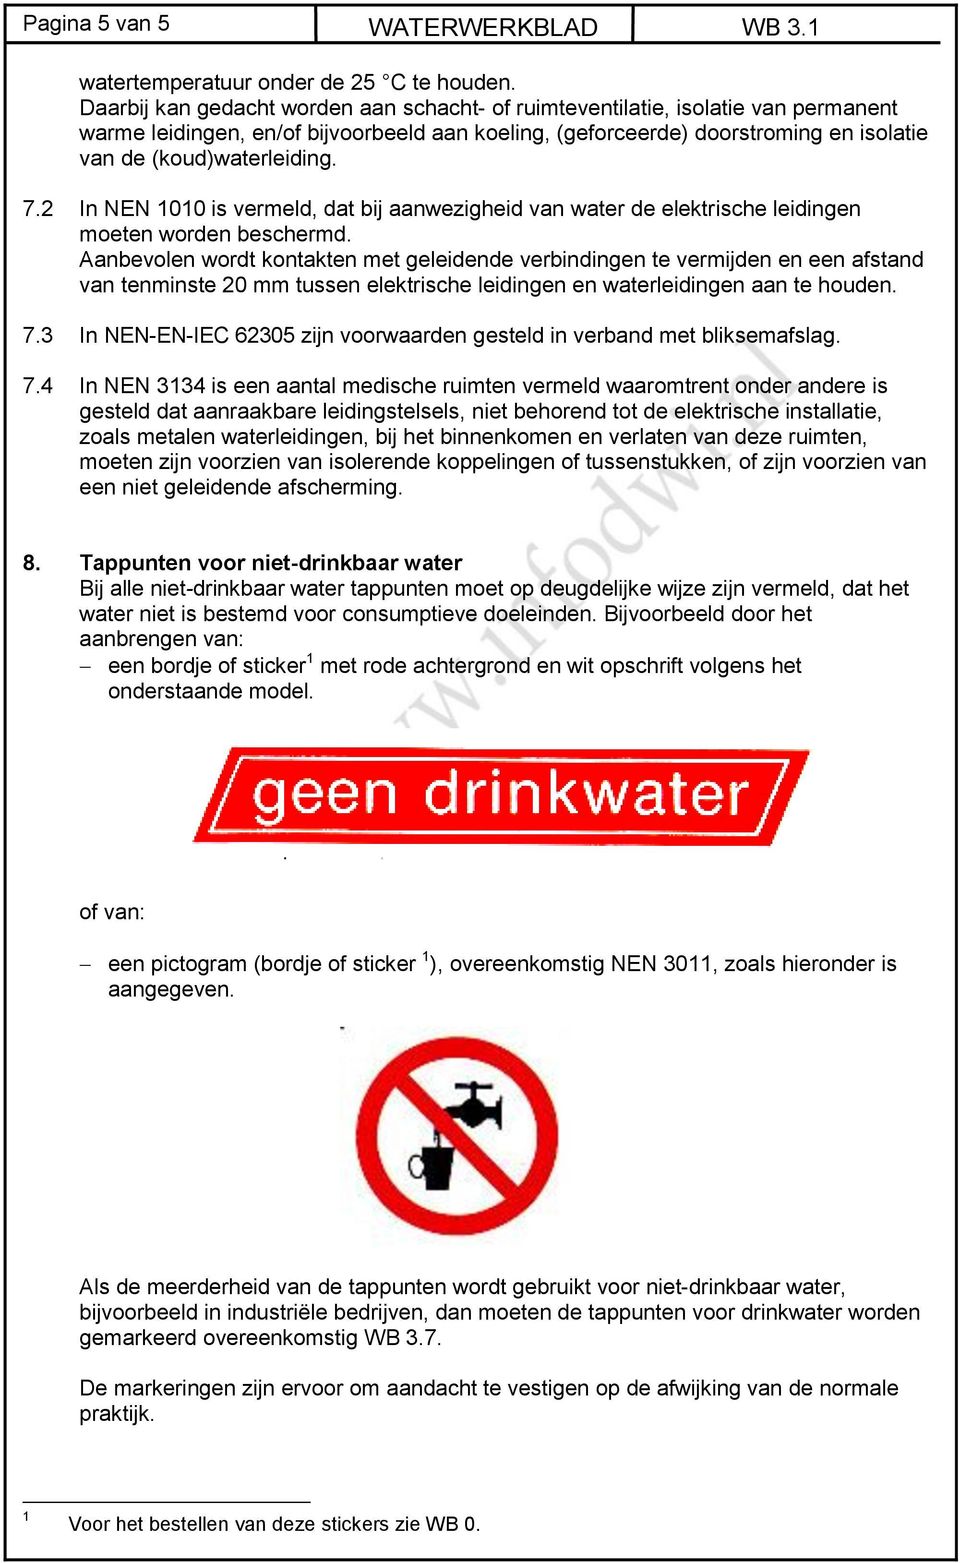 7.2 In NEN 1010 is vermeld, dat bij aanwezigheid van water de elektrische leidingen moeten worden beschermd.